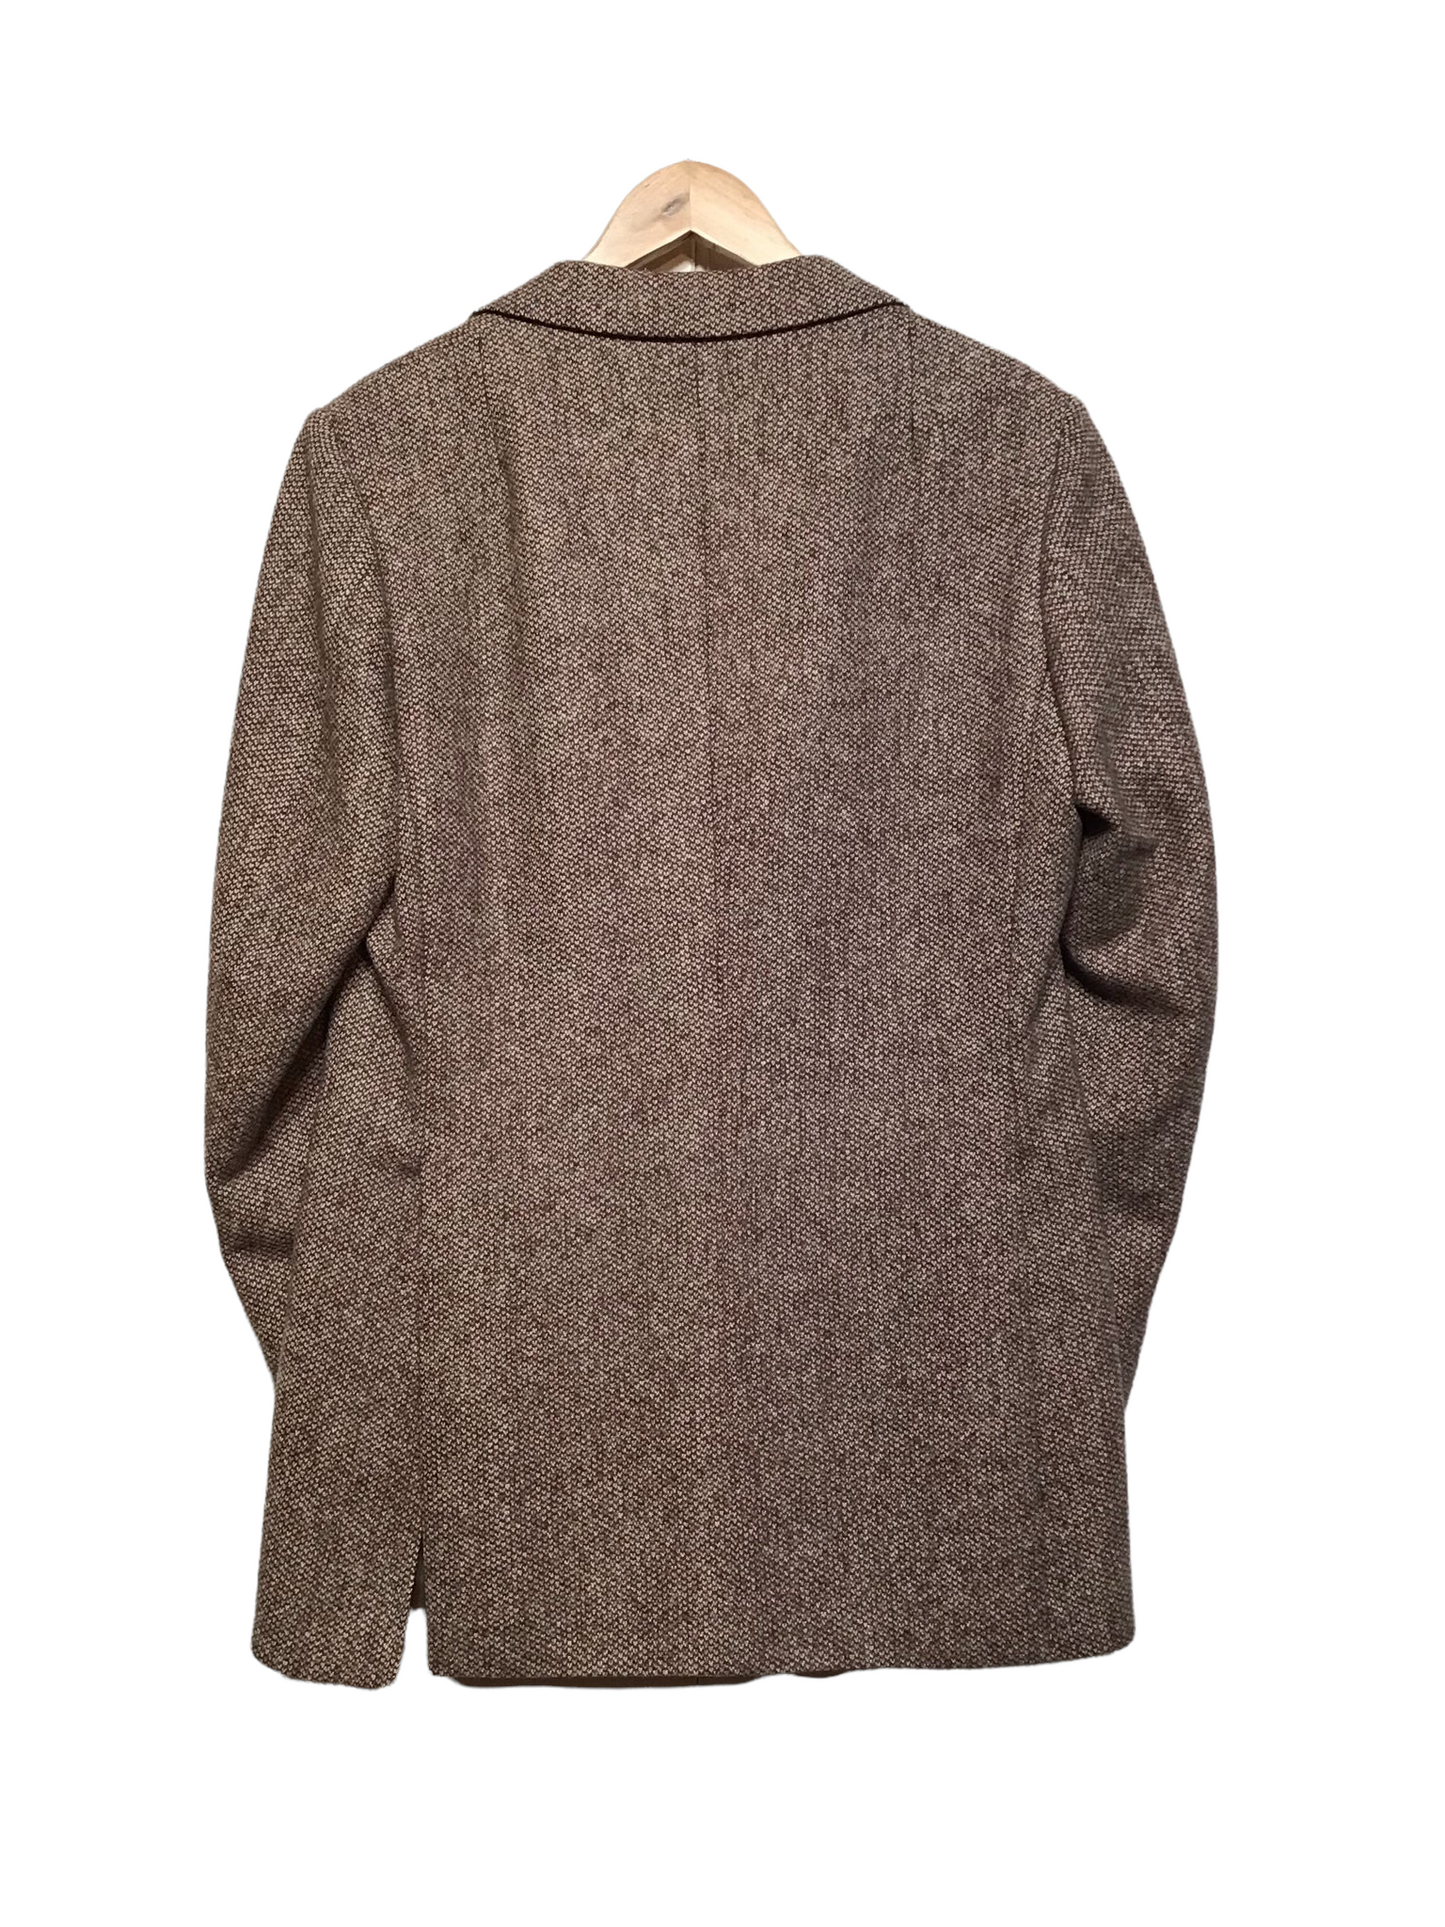 Brown Tweed Blazer (Size XL)